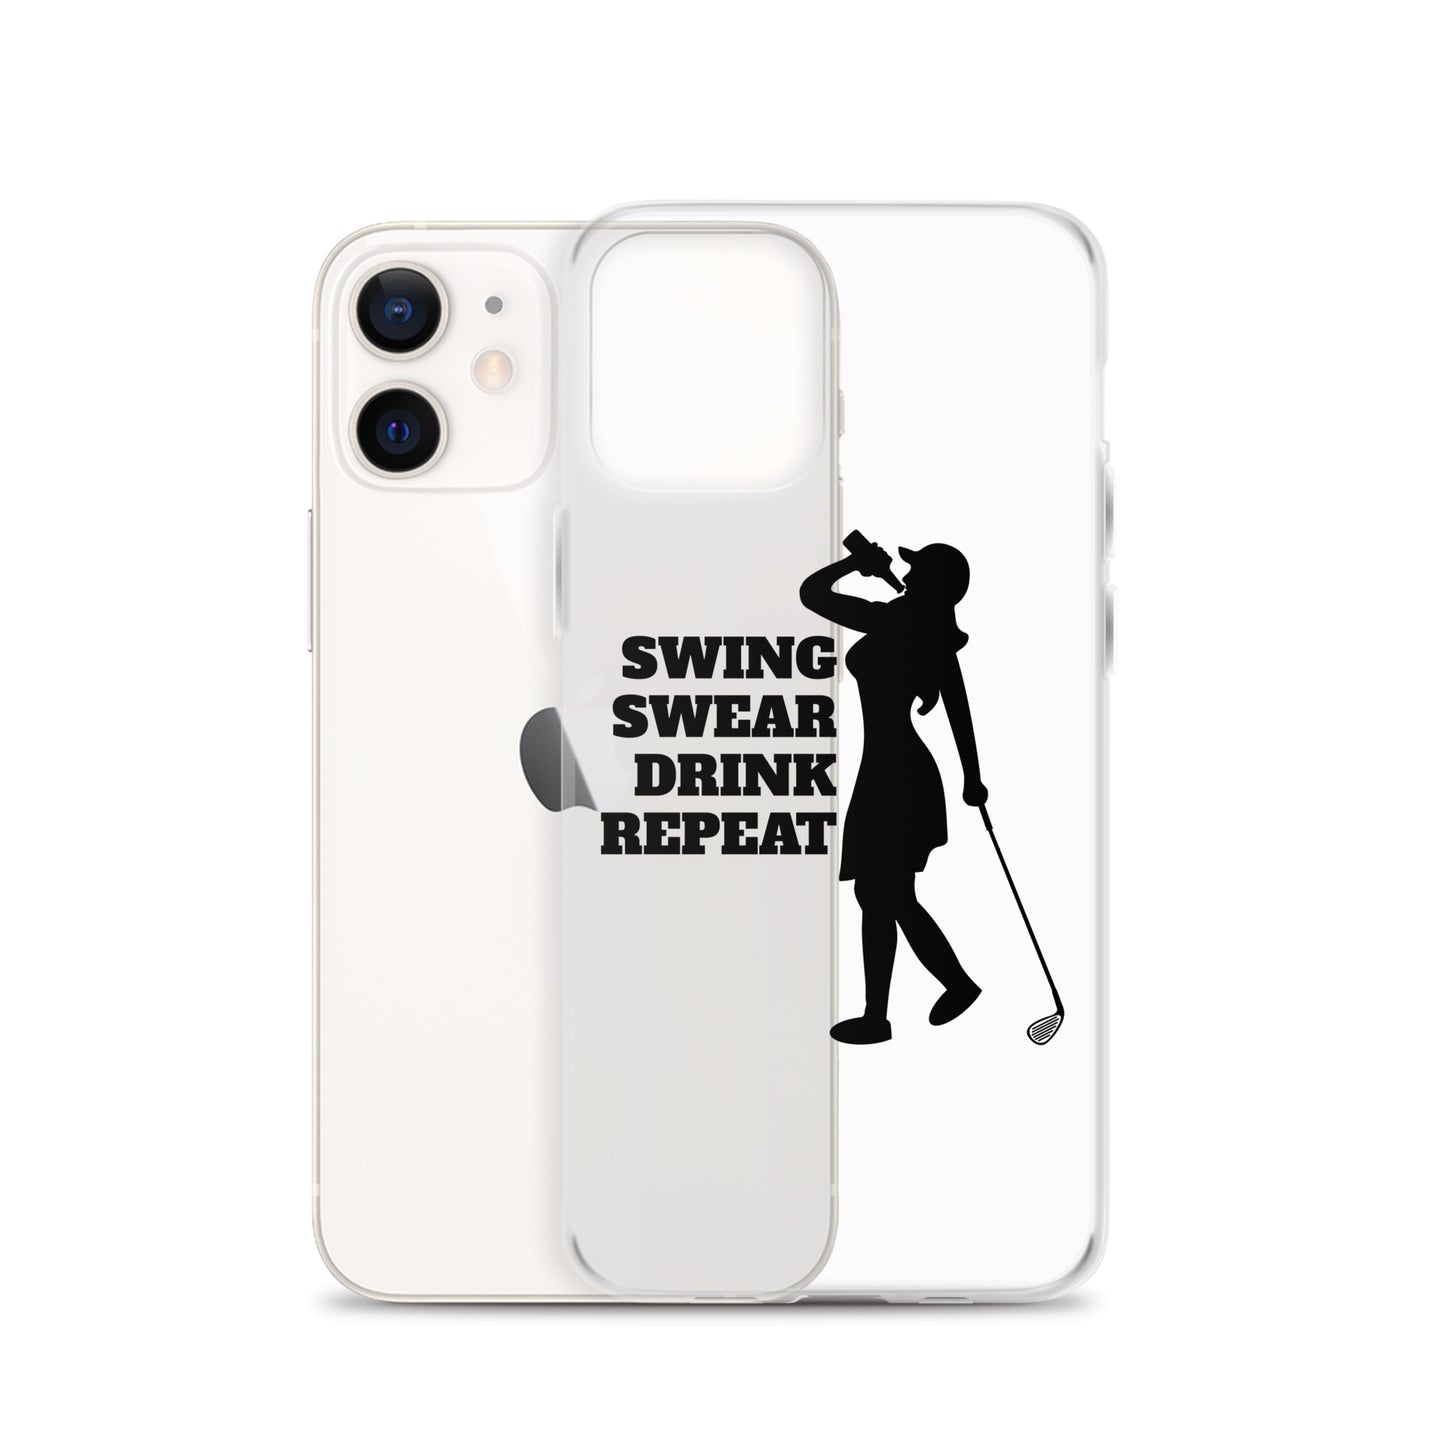 Swing, Swear, Drink, Repeat Woman iPhone Case